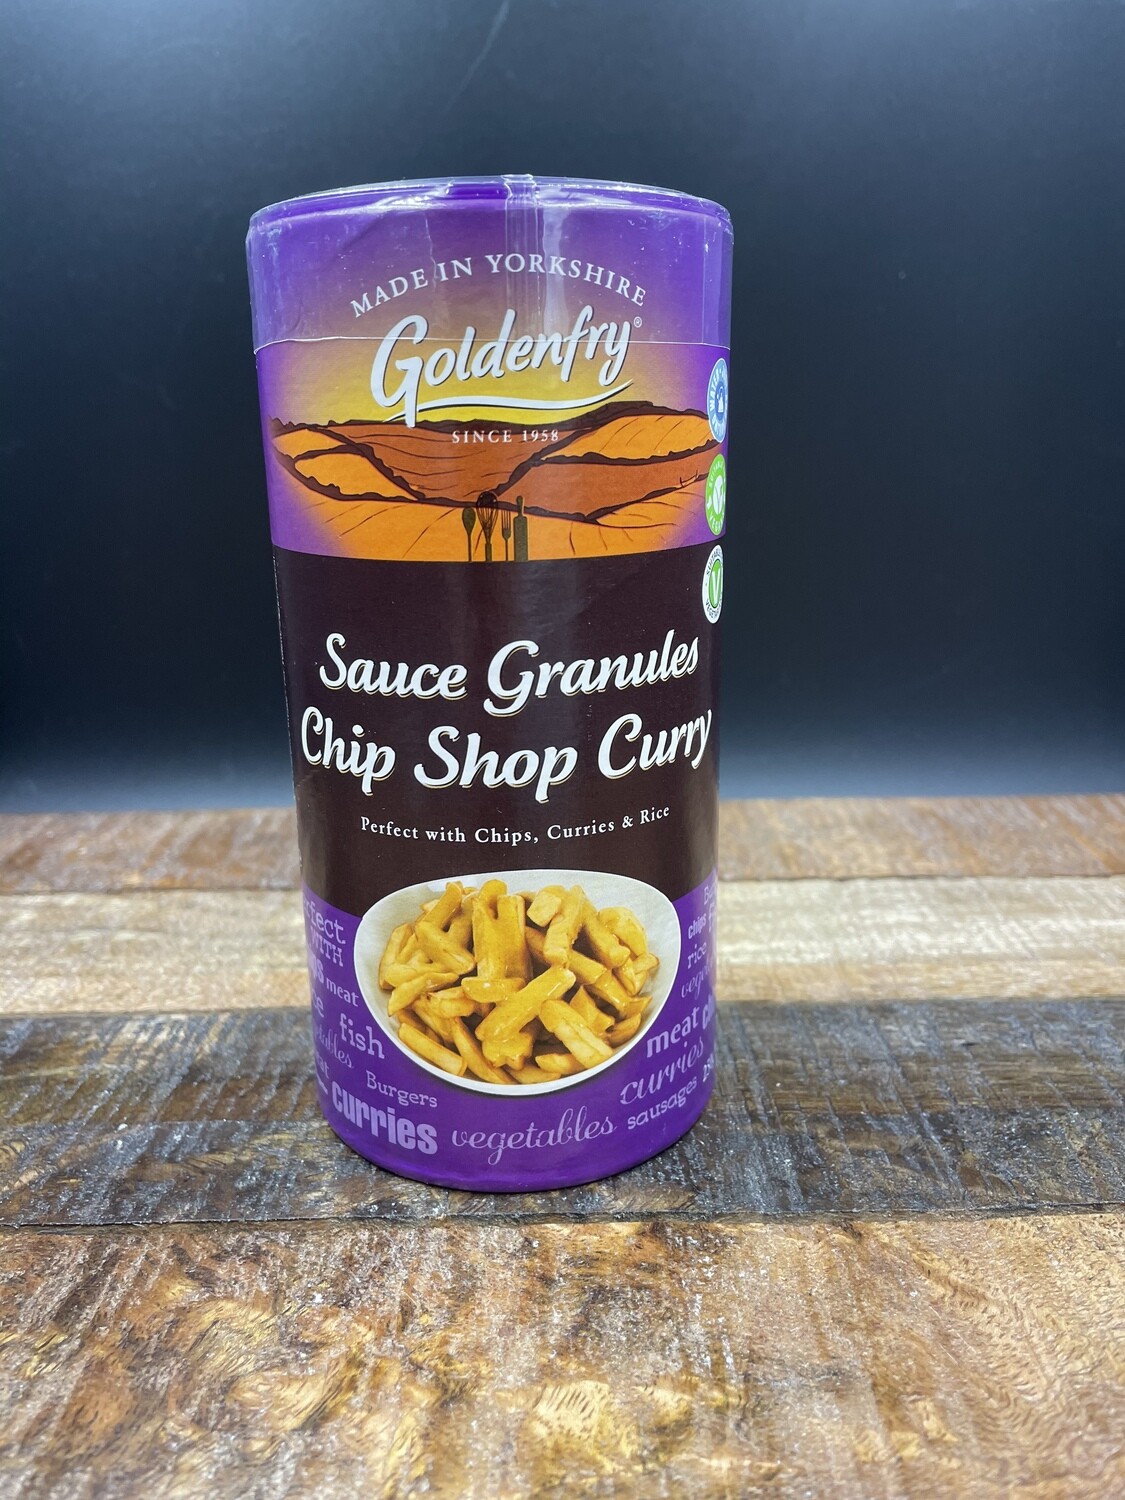 Goldenfry Sauce Granules Chip Shop Curry 250g